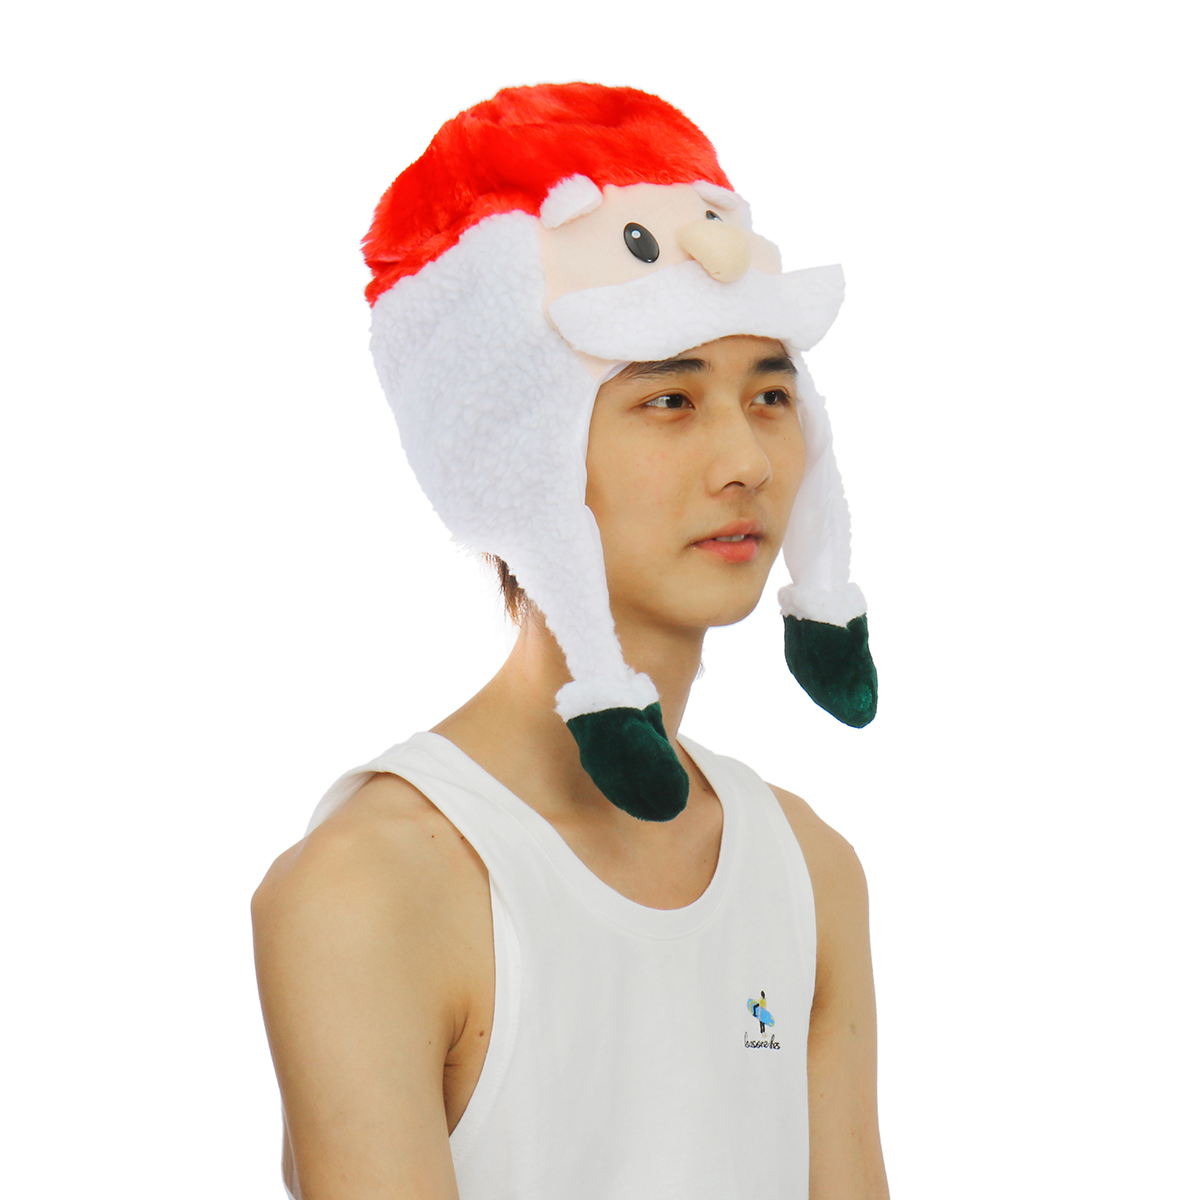 Unisex-Christmas-Xmas-Novelty-Plush-Hat-Santa-Claus-Hat-Holiday-Decoration-1747495-3